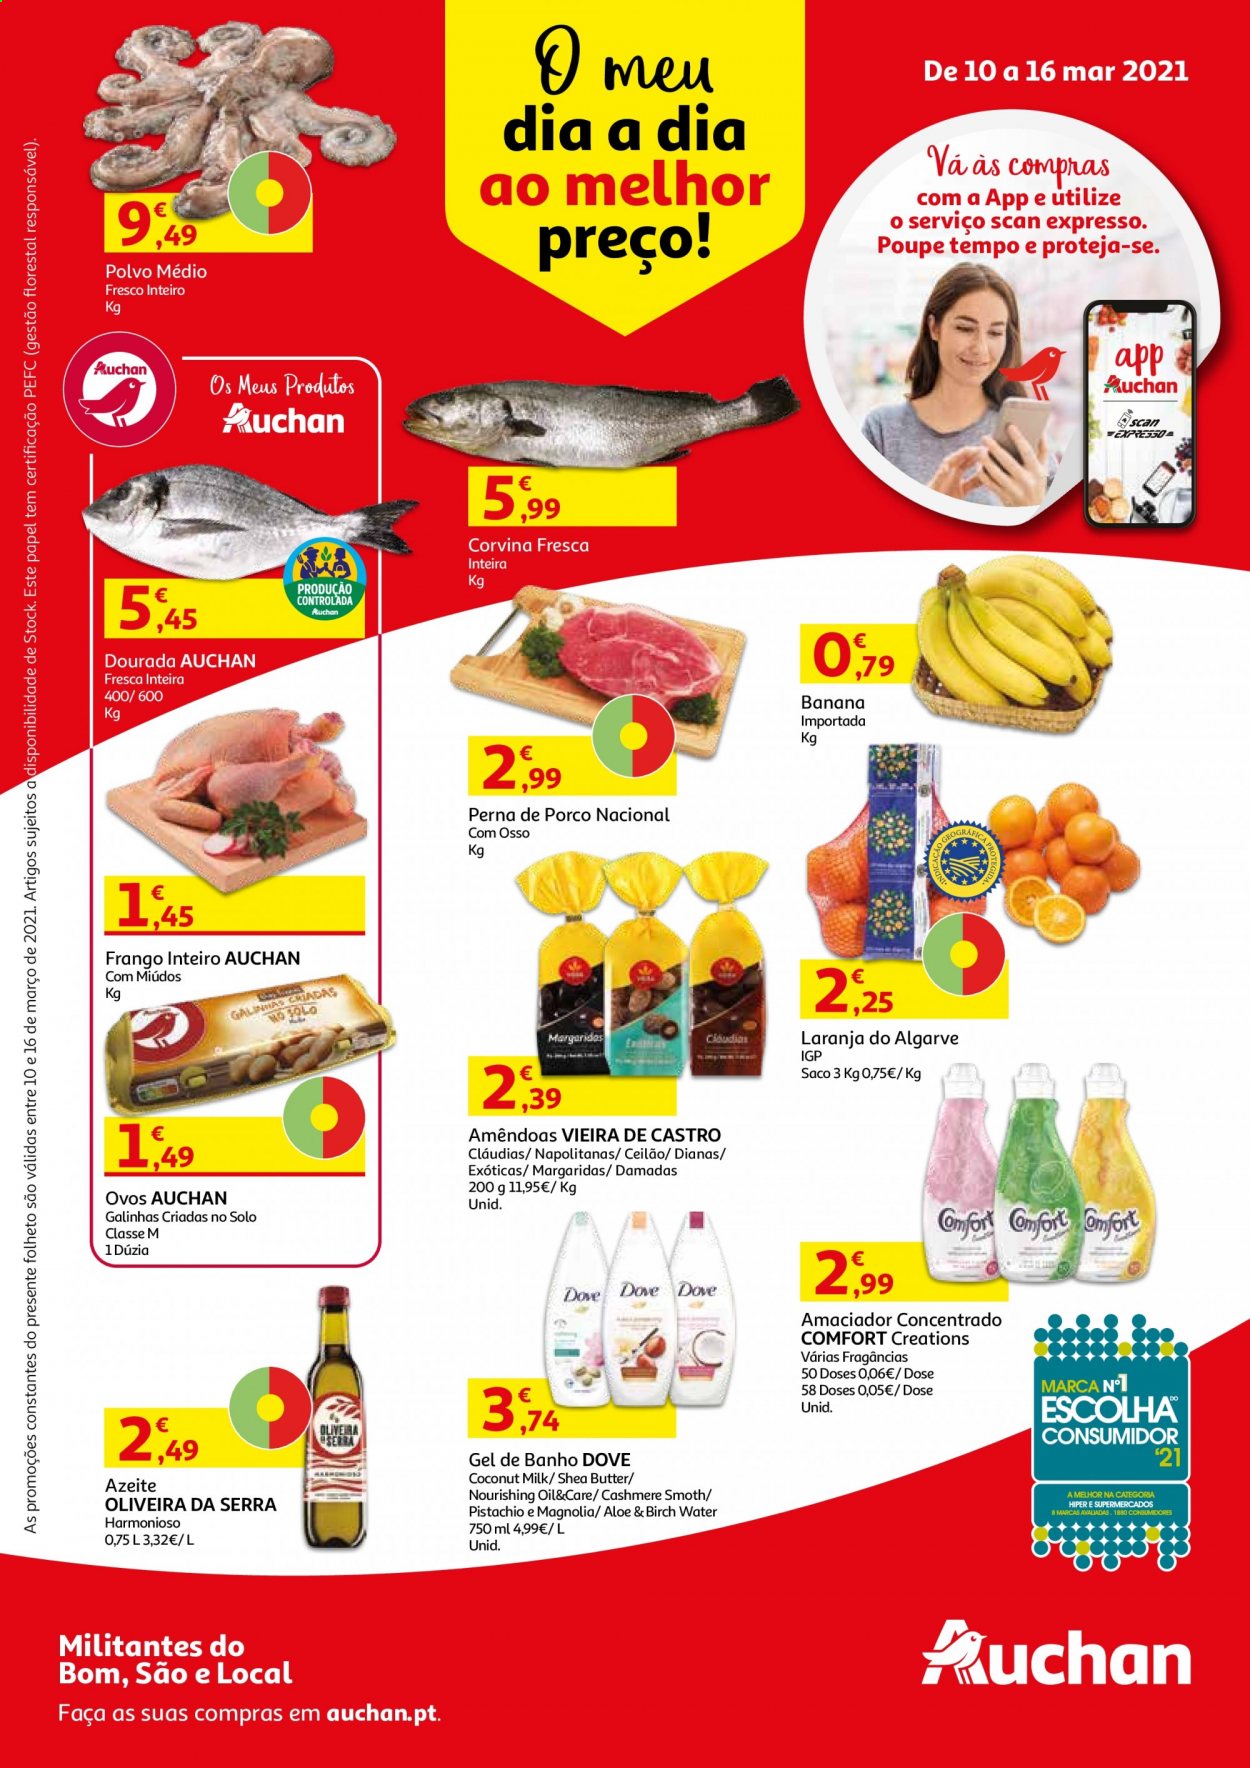 thumbnail - Folheto Auchan - 10.3.2021 - 16.3.2021 - Produtos em promoção - banana, laranja, frango, frango inteiro, polvo, corvina, ovos, azeite de oliva, Dove, gel de banho. Página 1.